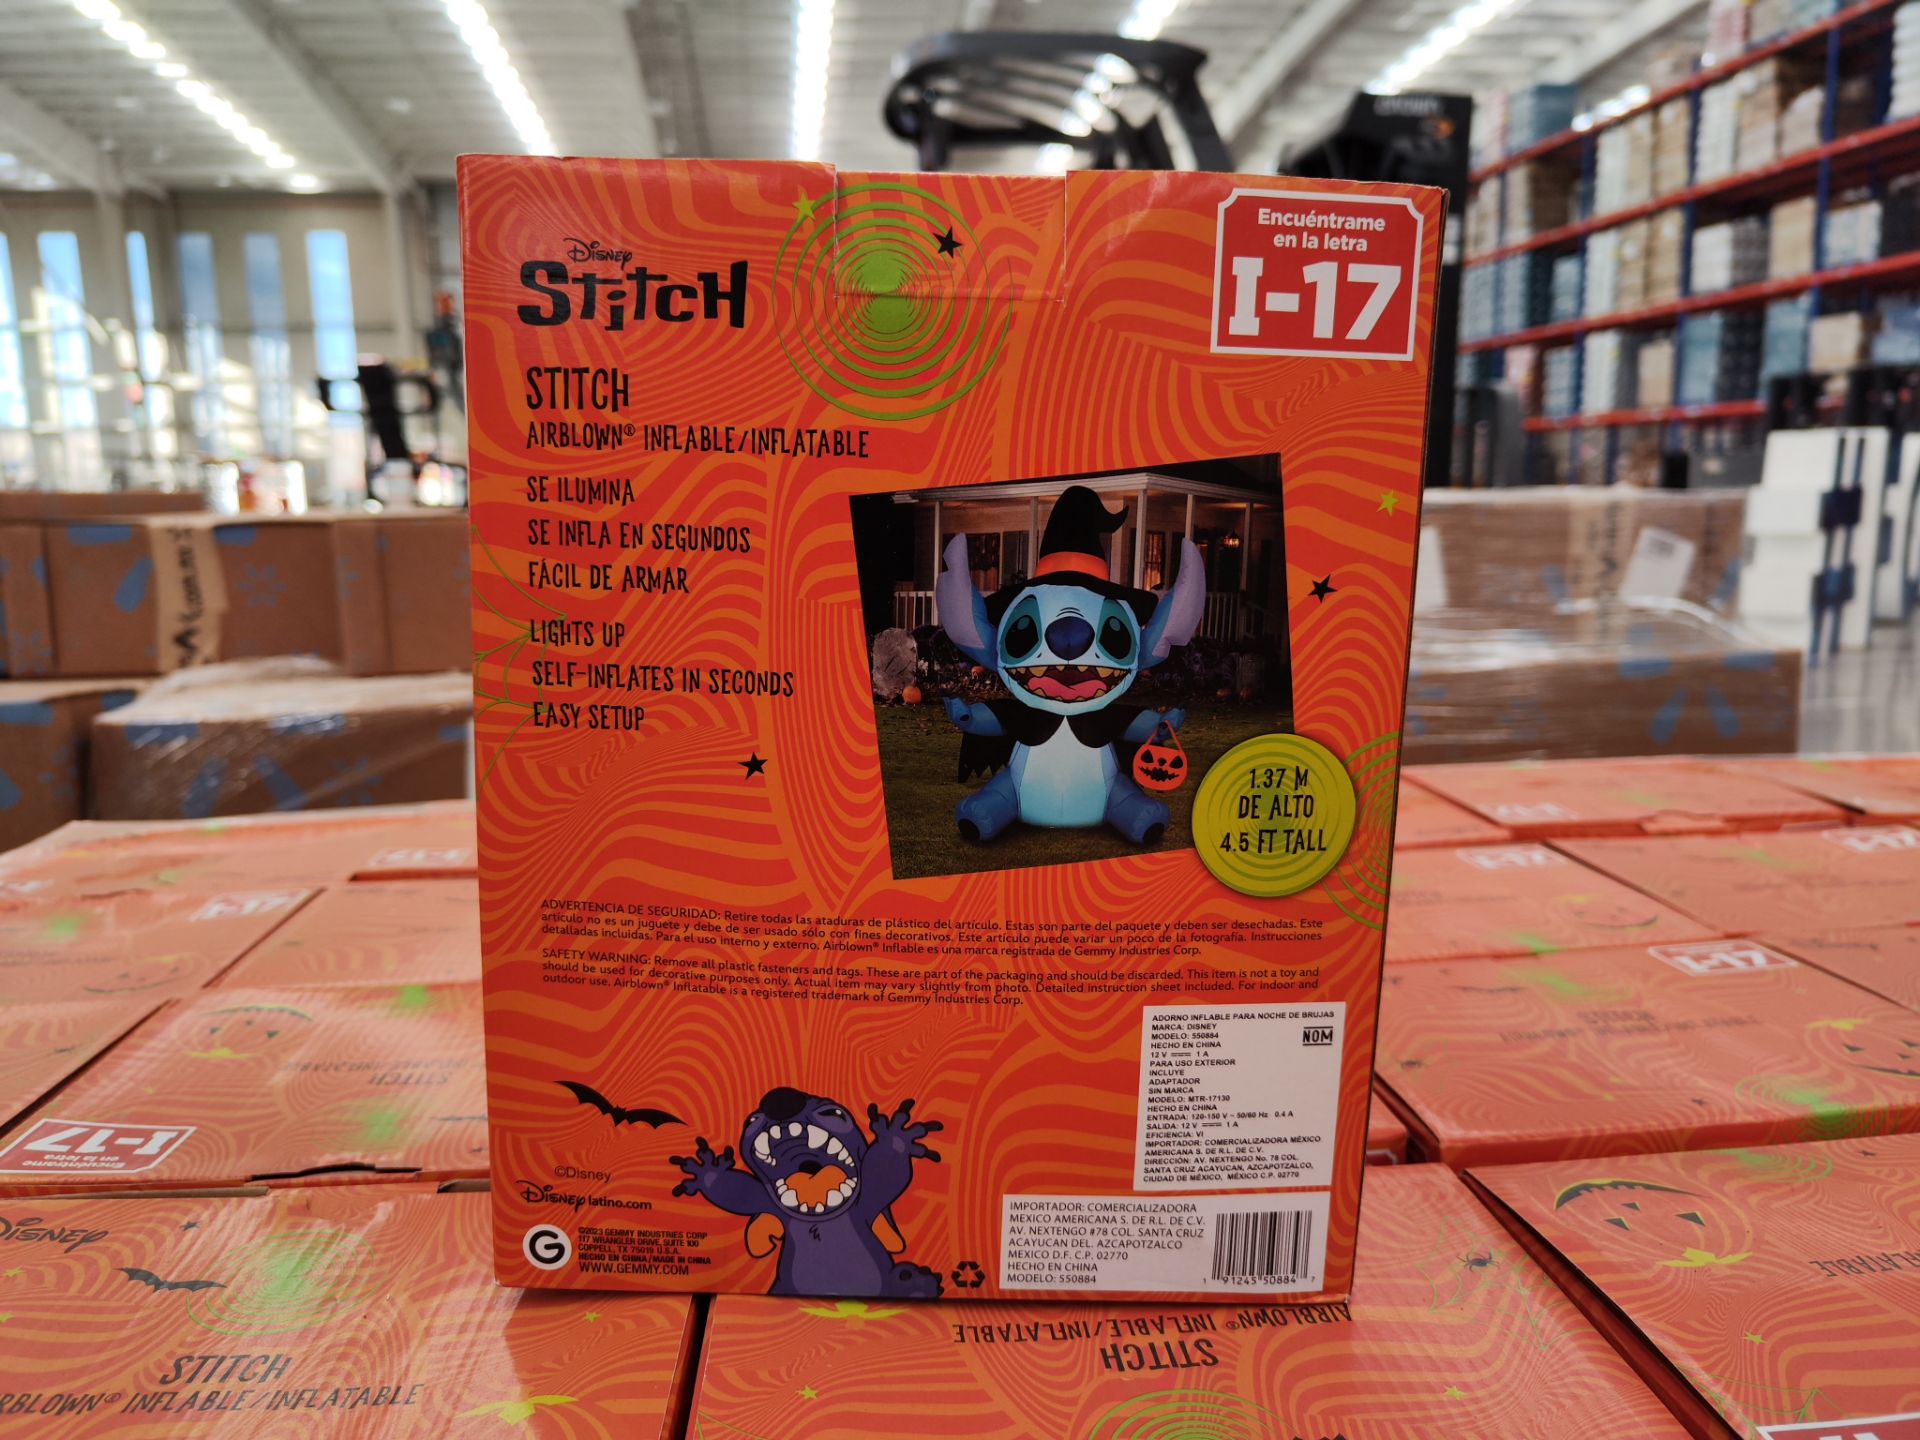 (NUEVO) Lote de 27 piezas de inflable con iluminación de Stitch Halloween, Marca AIRBLOWN, 1.37 m de - Image 4 of 4